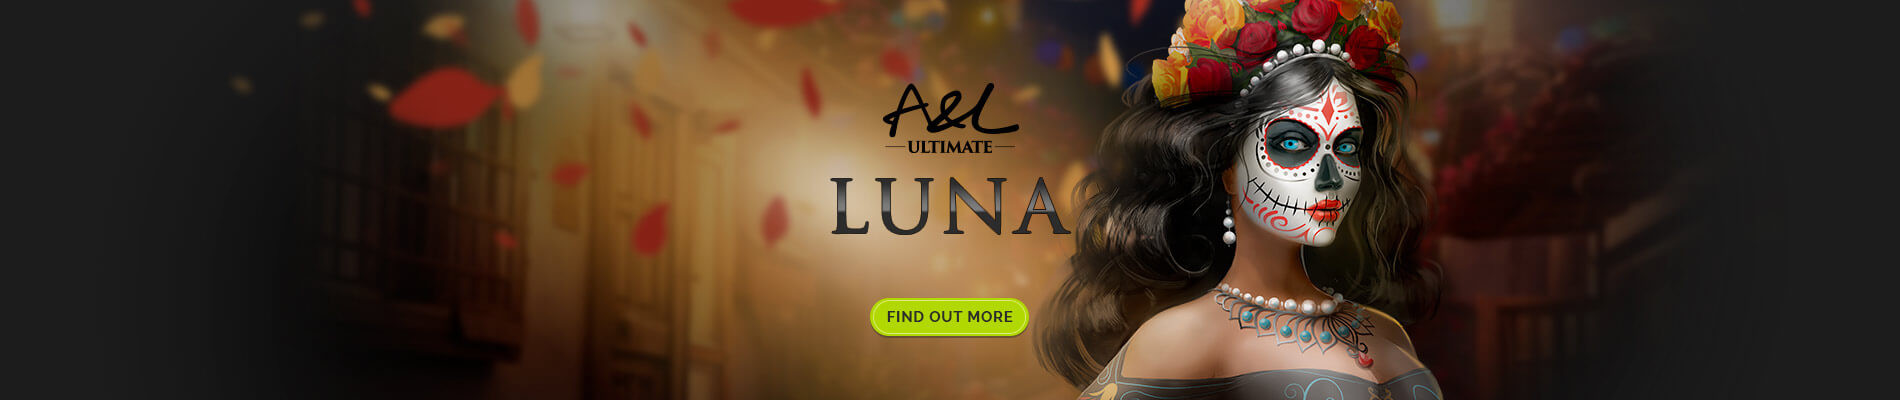 A&L Ultimate Luna